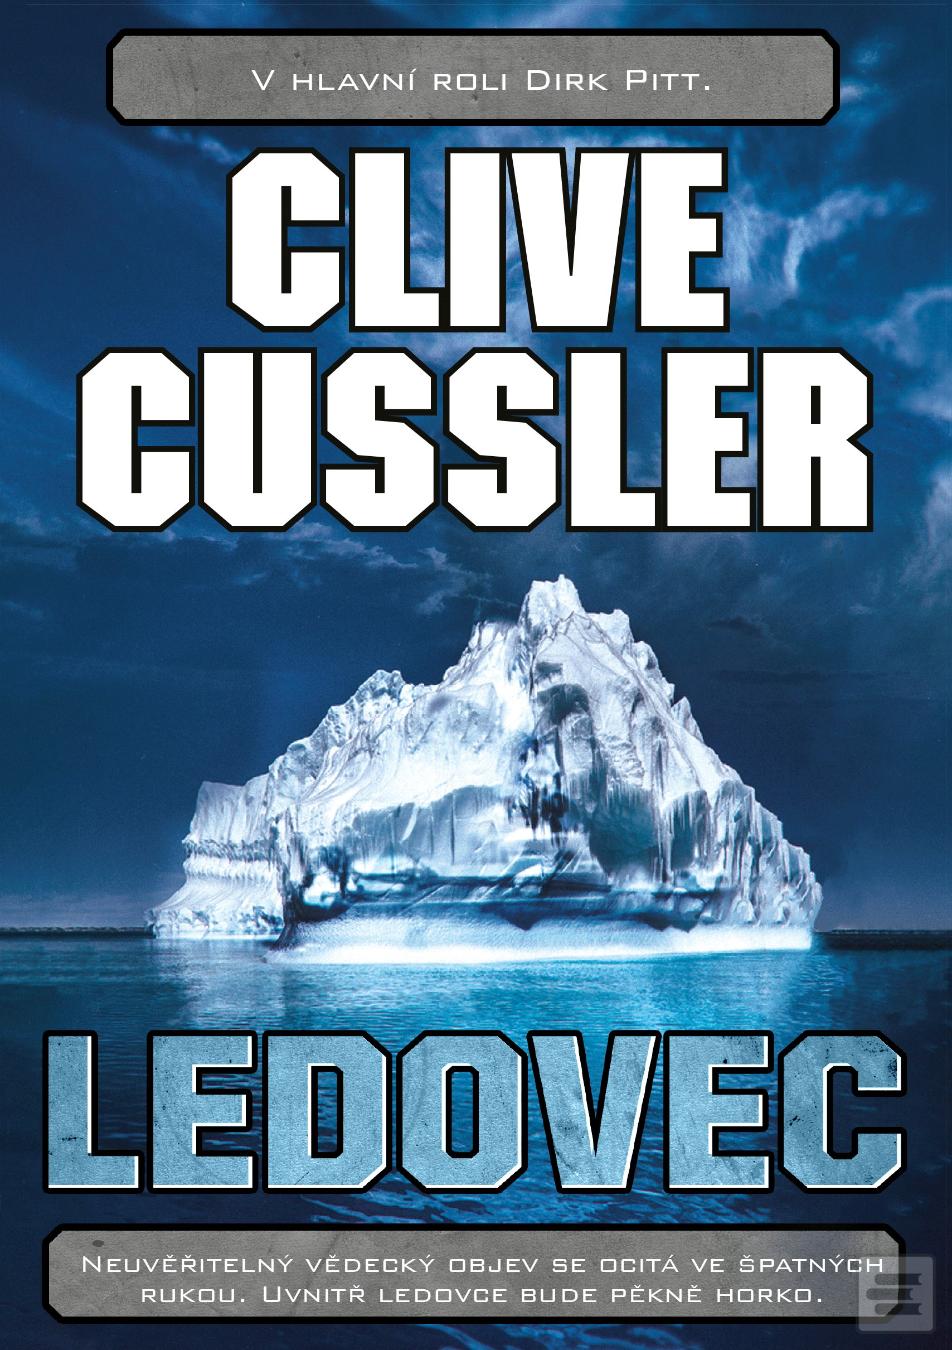 Kniha: Ledovec - 2. vydanie - Clive Cussler